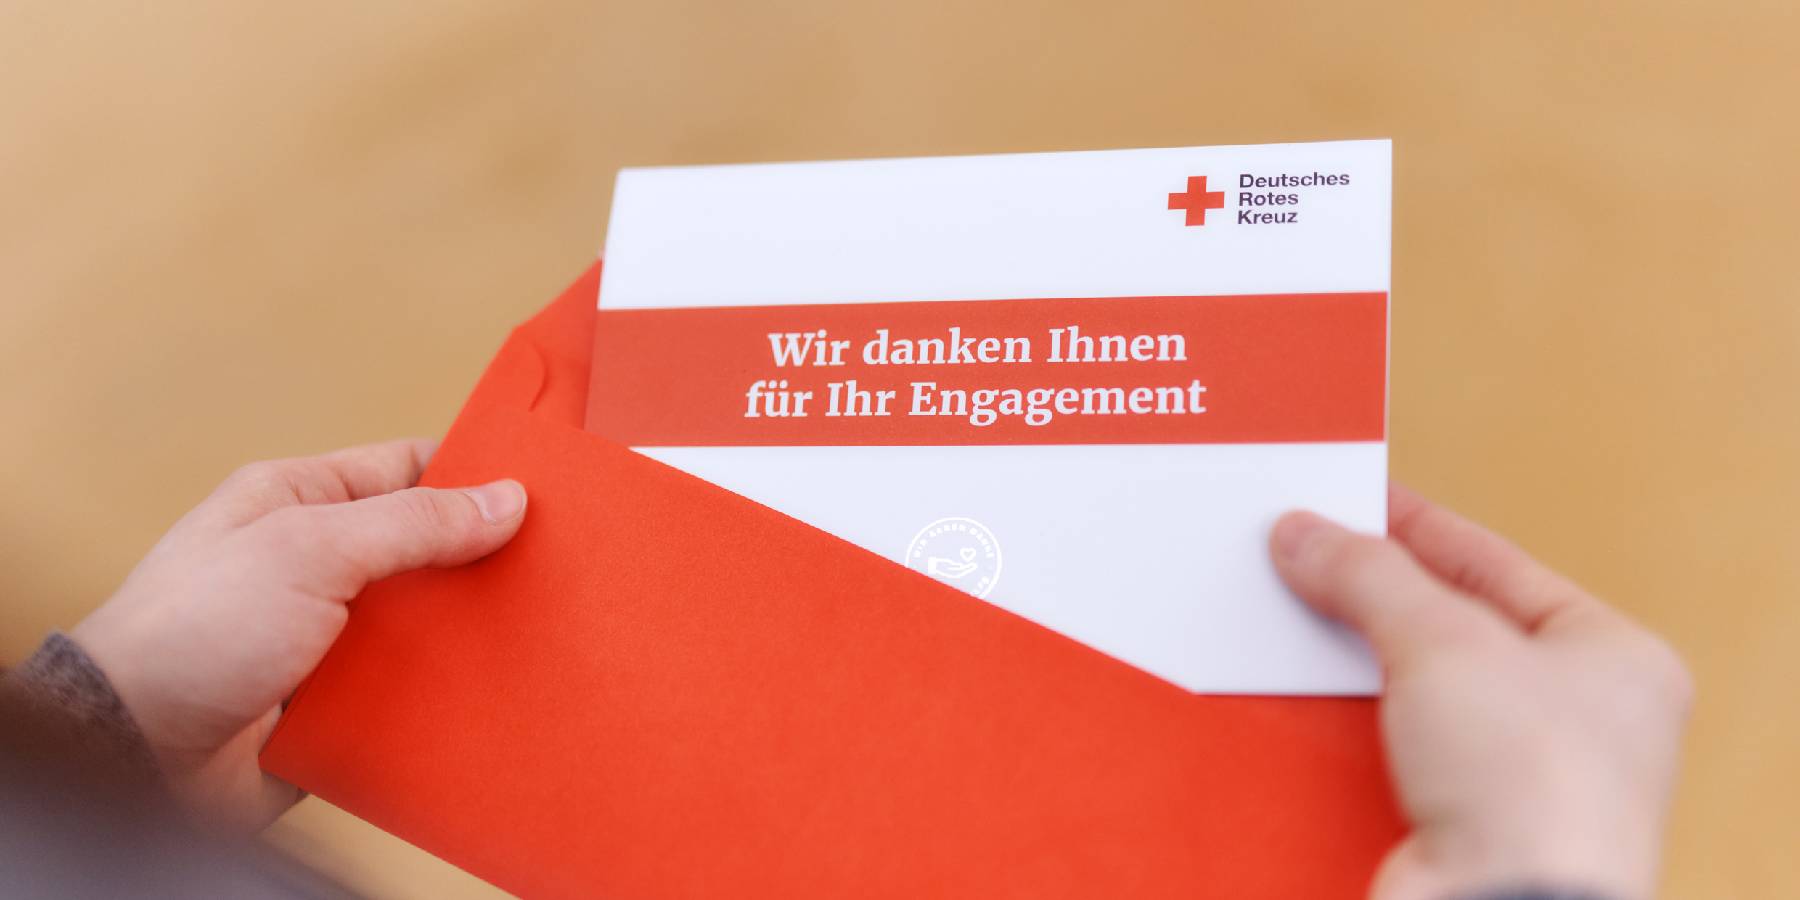 ZANATTA media ist neue Digital-Mediaagentur des Deutschen Roten Kreuzes